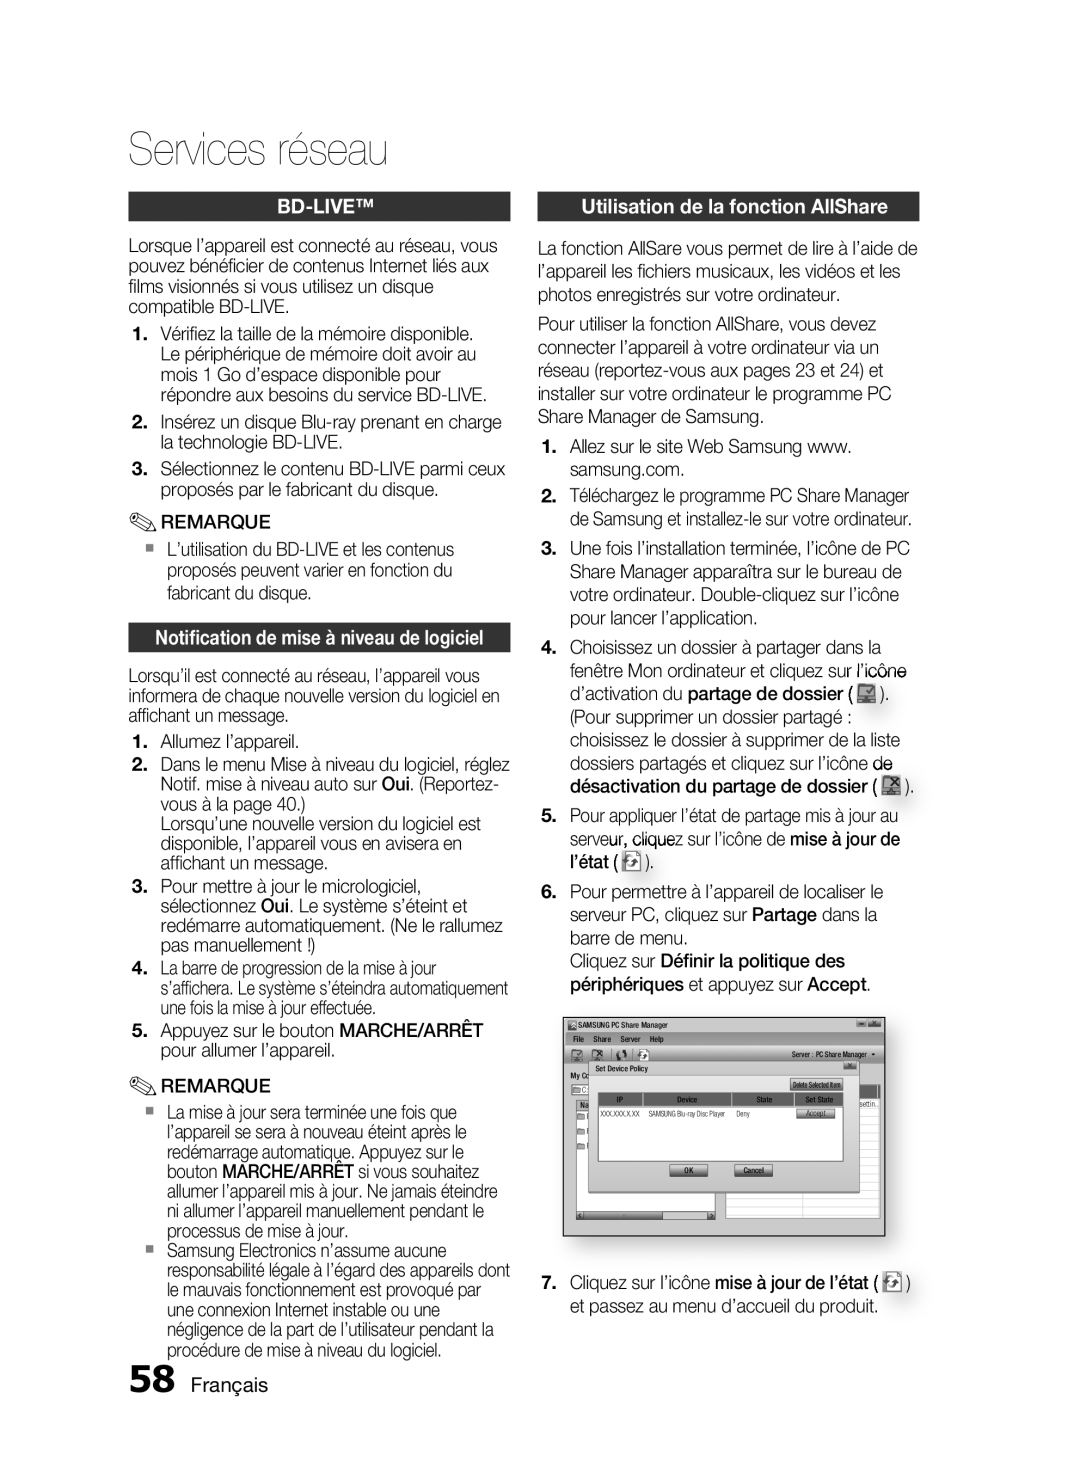 Samsung HT-C6200/XEF manual Bd-Live, Notiﬁcation de mise à niveau de logiciel, Français, Services réseau 